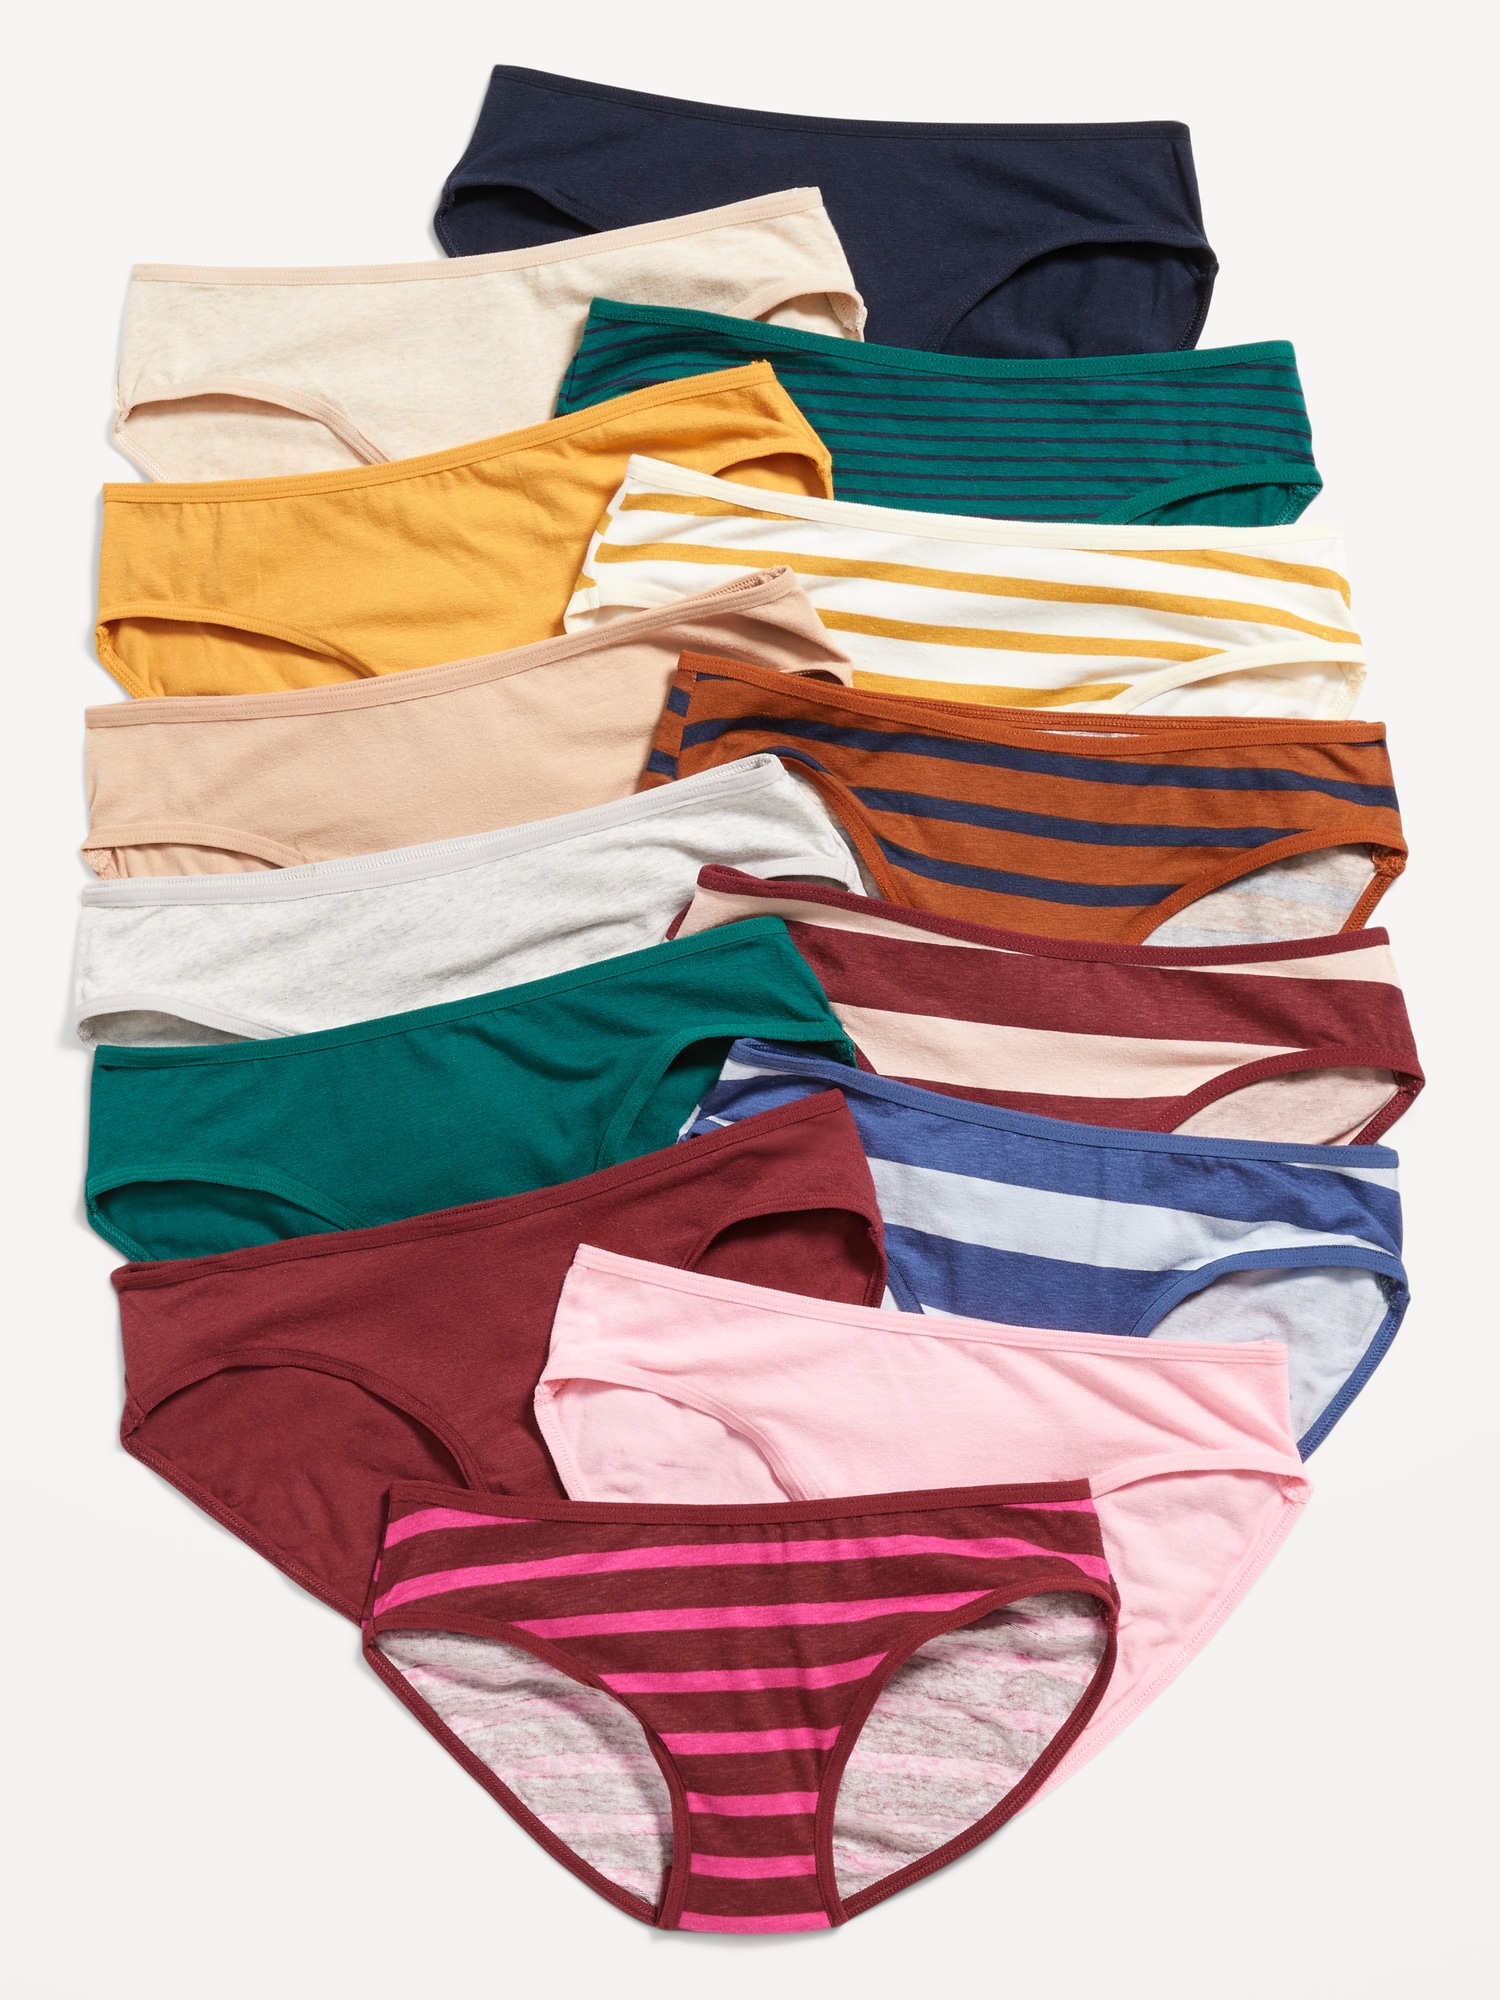 Girls' Underwear - Assorted Solids, Size 6, 5 Pack